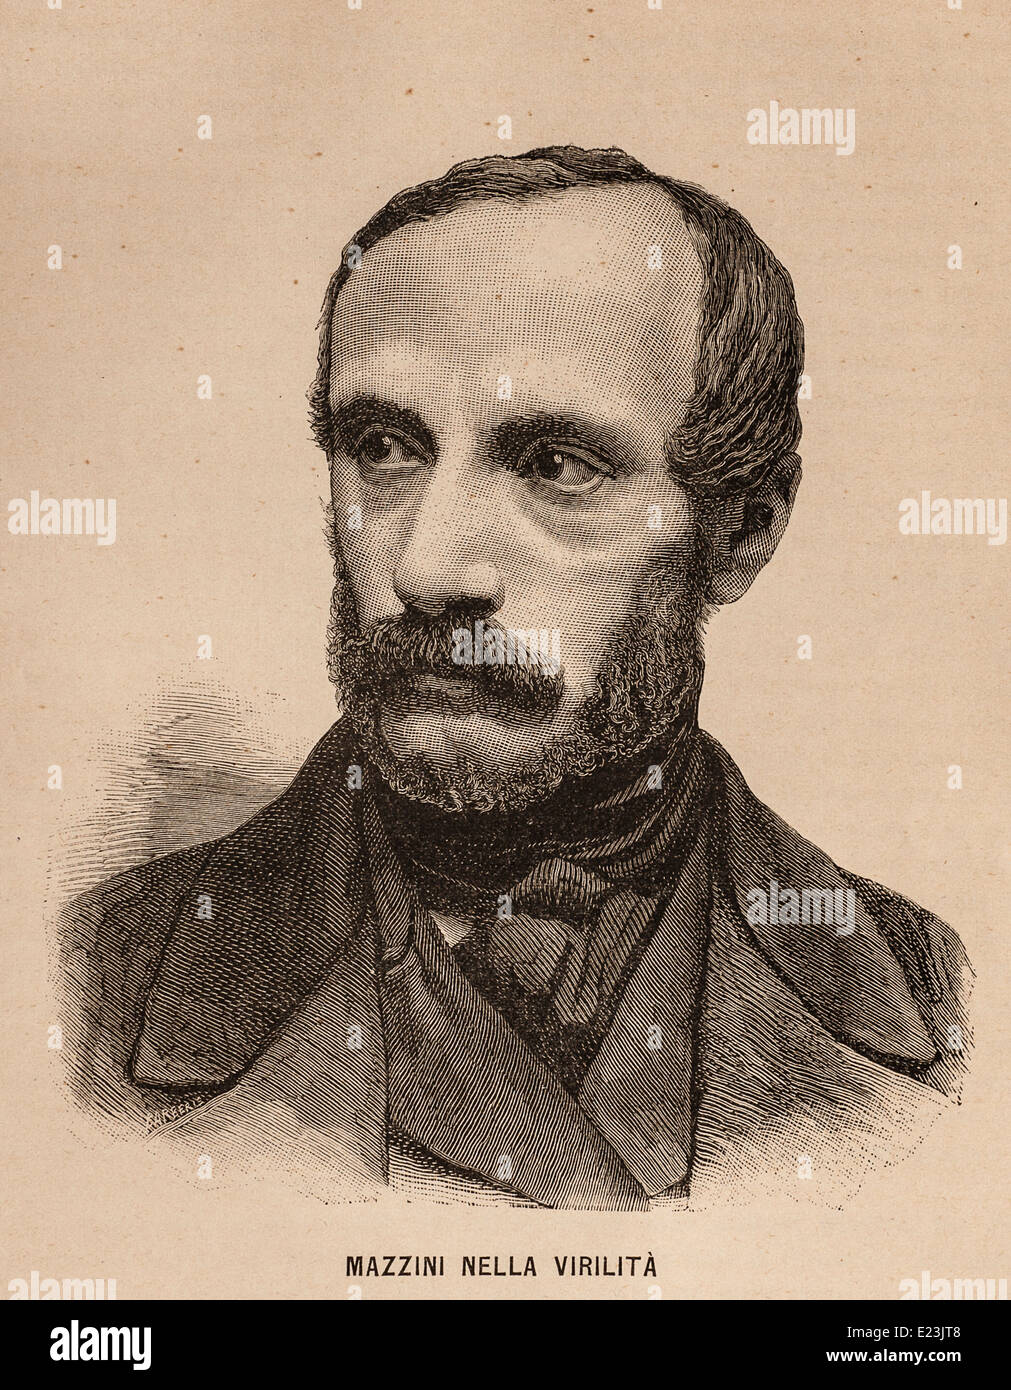 Giuseppe Mazzini du livre de Jessie W. Mario de vie de Mazzini. Portrait de Giuseppe Mazzini Banque D'Images